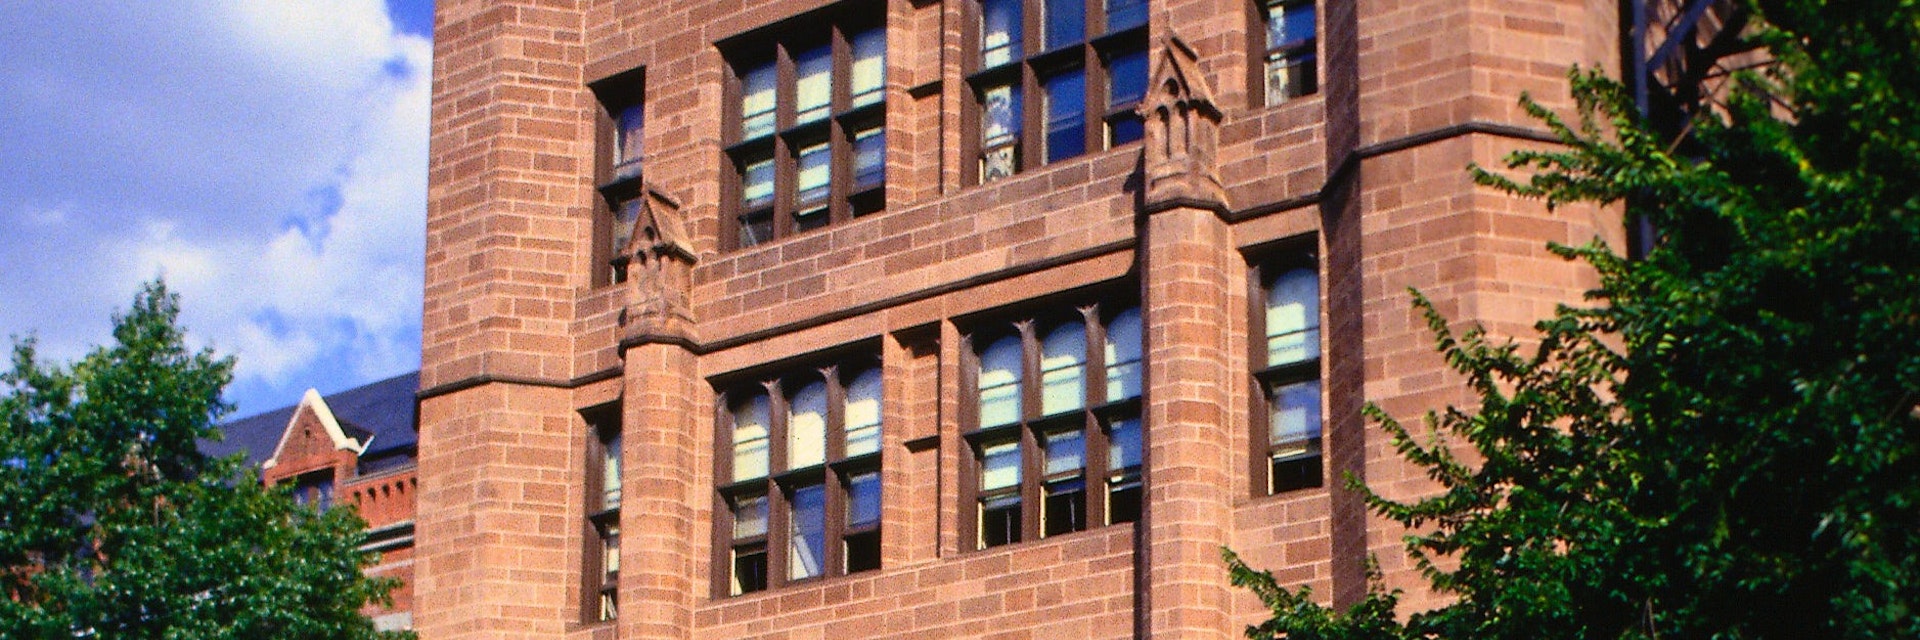 Yale University - New Haven, Connecticut